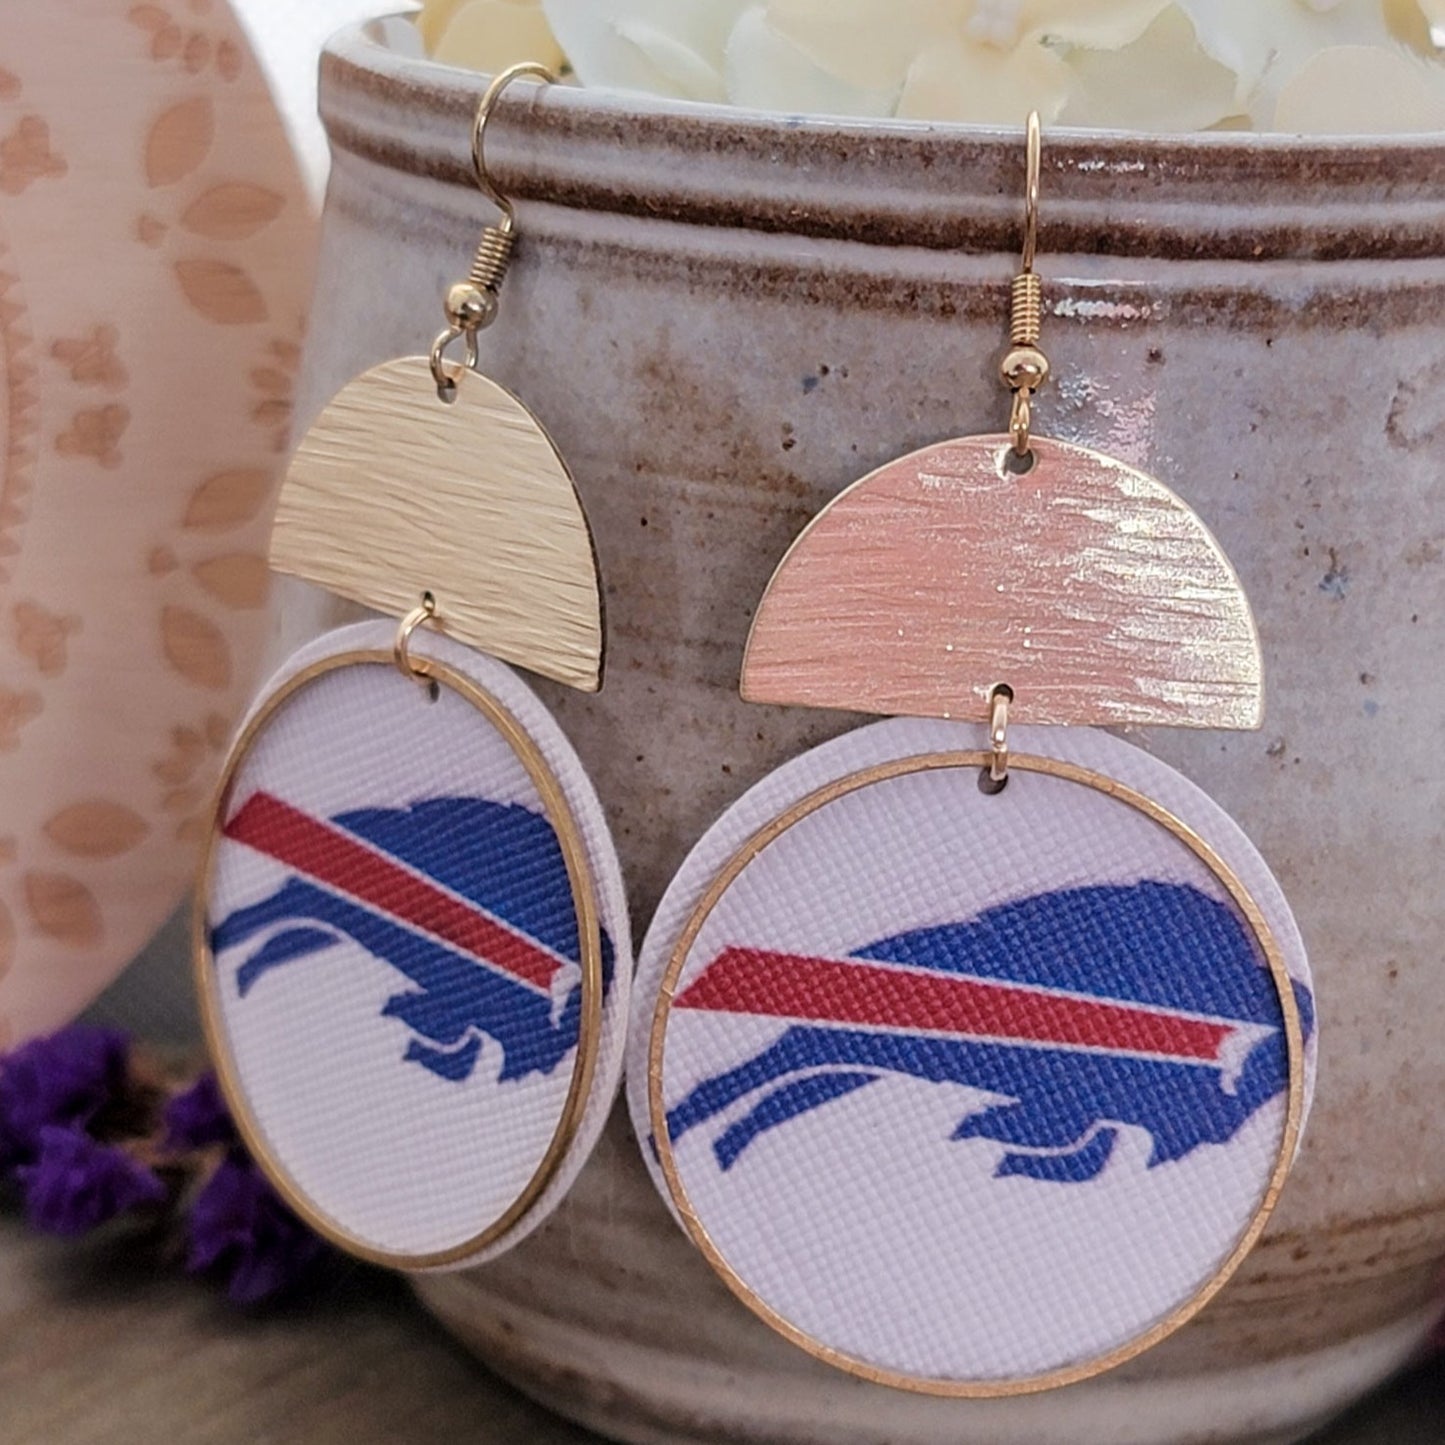 Buffalo Bills Football Earrings - Nicki Lynn Jewelry